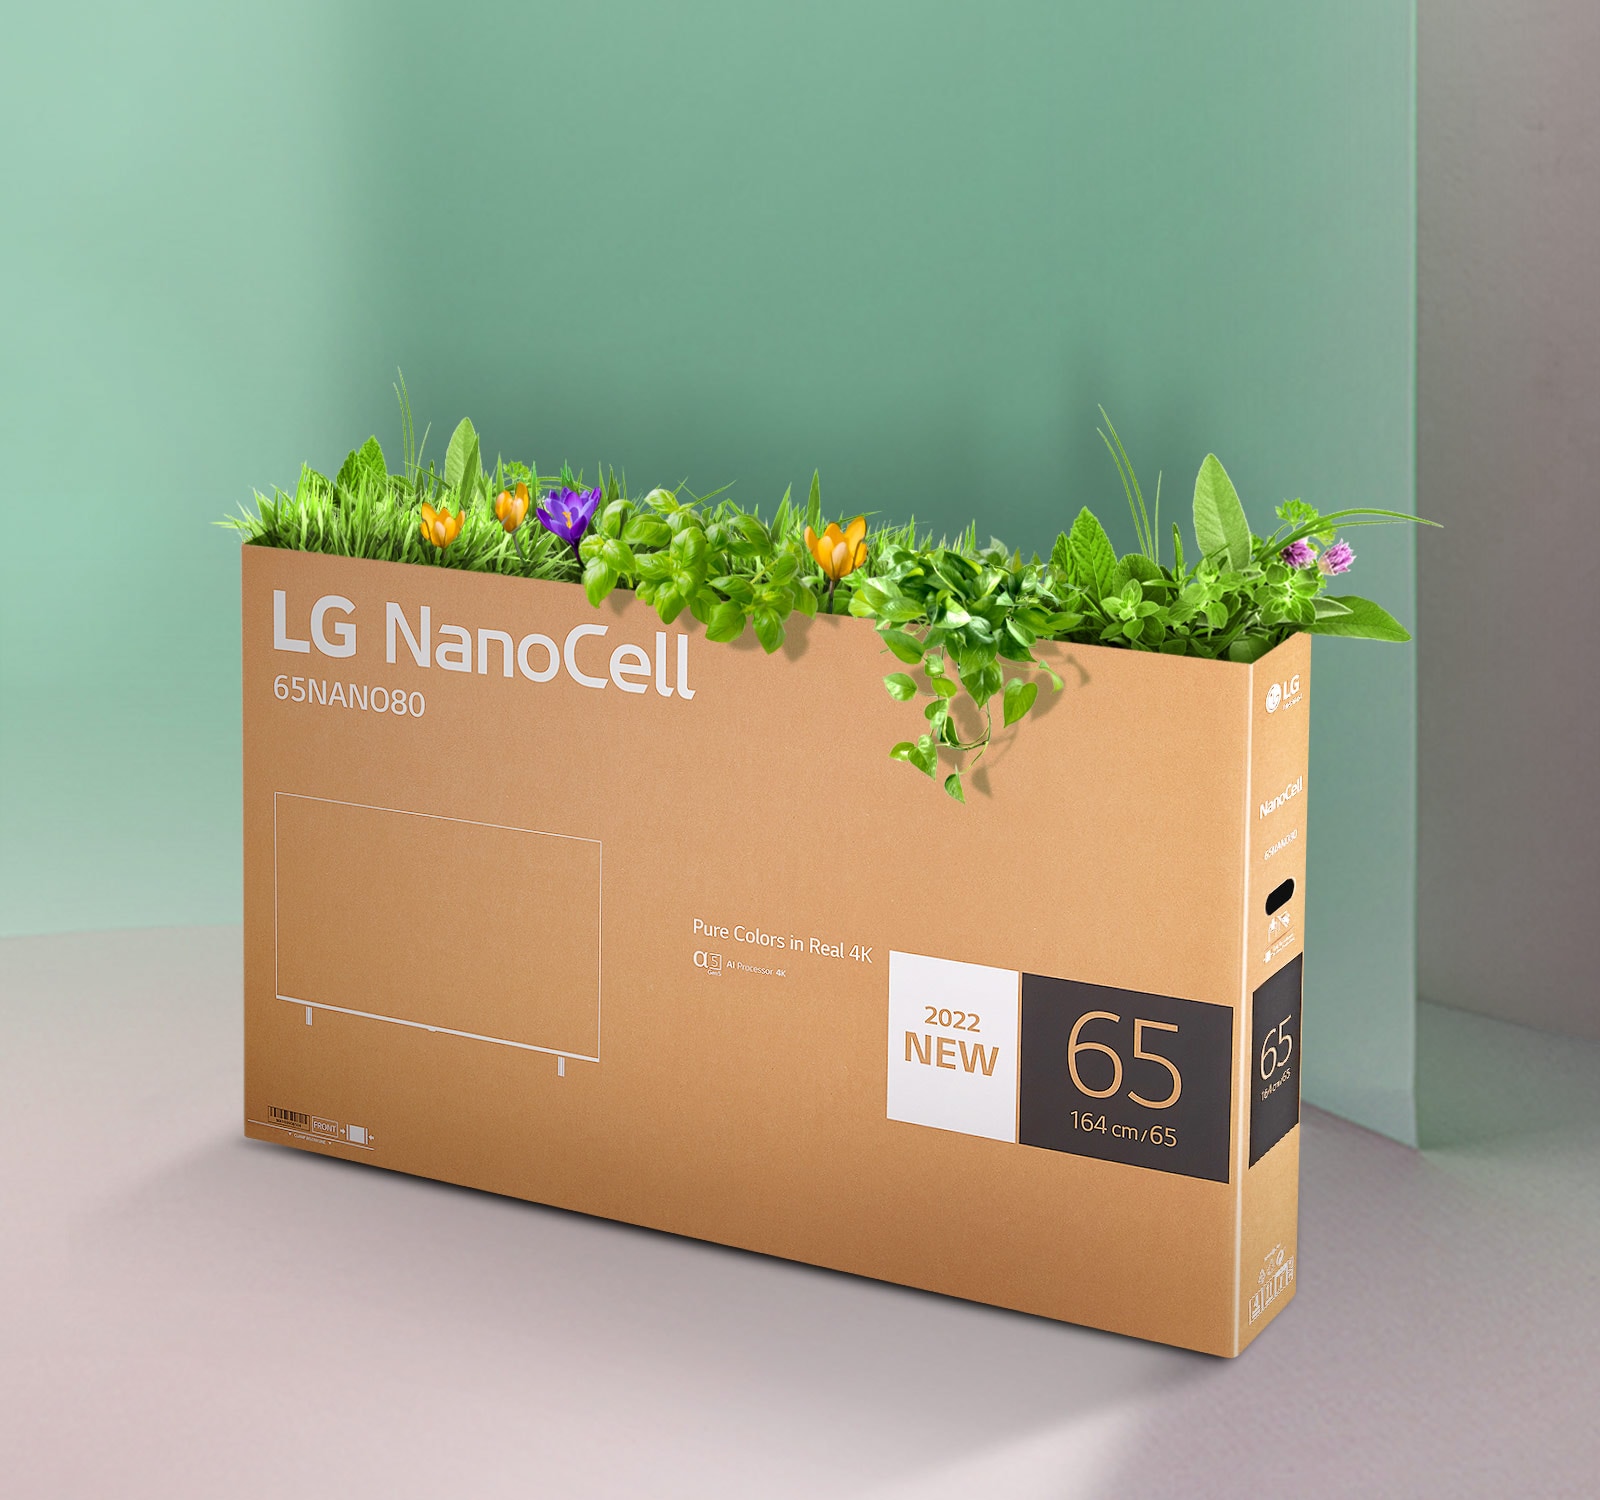 Придатна для вторинної переробки телевізійна коробка LG NanoCell із квітами та рослинами, що проростають із верхньої частини коробки.